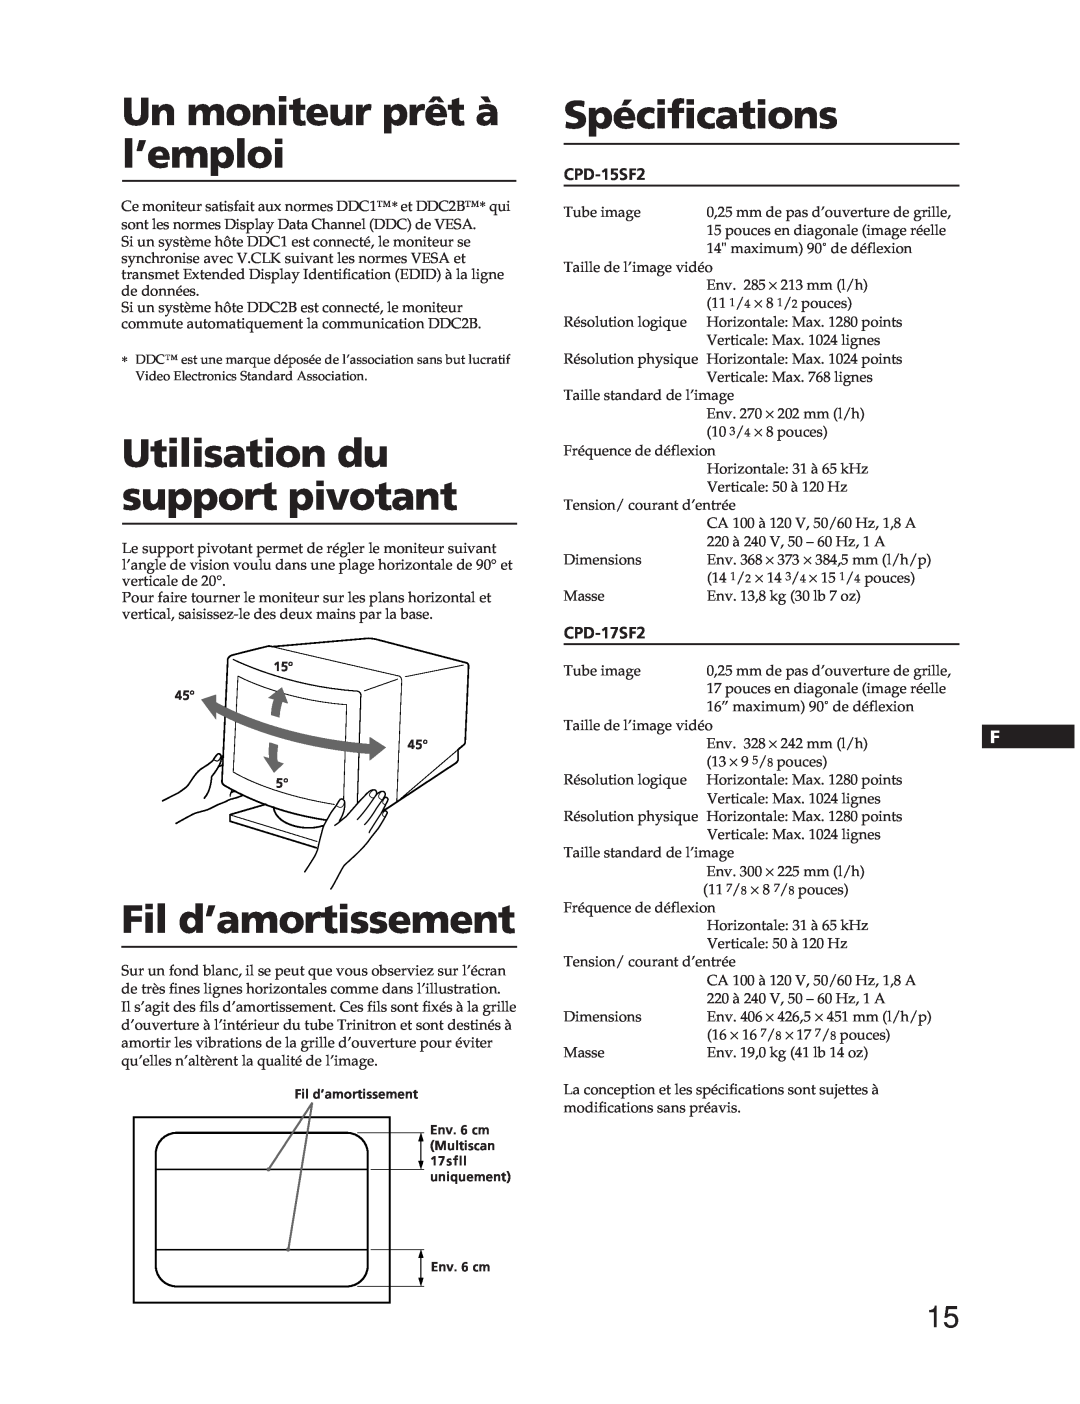 Sony CPD-15SF2 manual Un moniteur prêt à l’emploi, Utilisation du support pivotant, Fil d’amortissement, Spécifications 